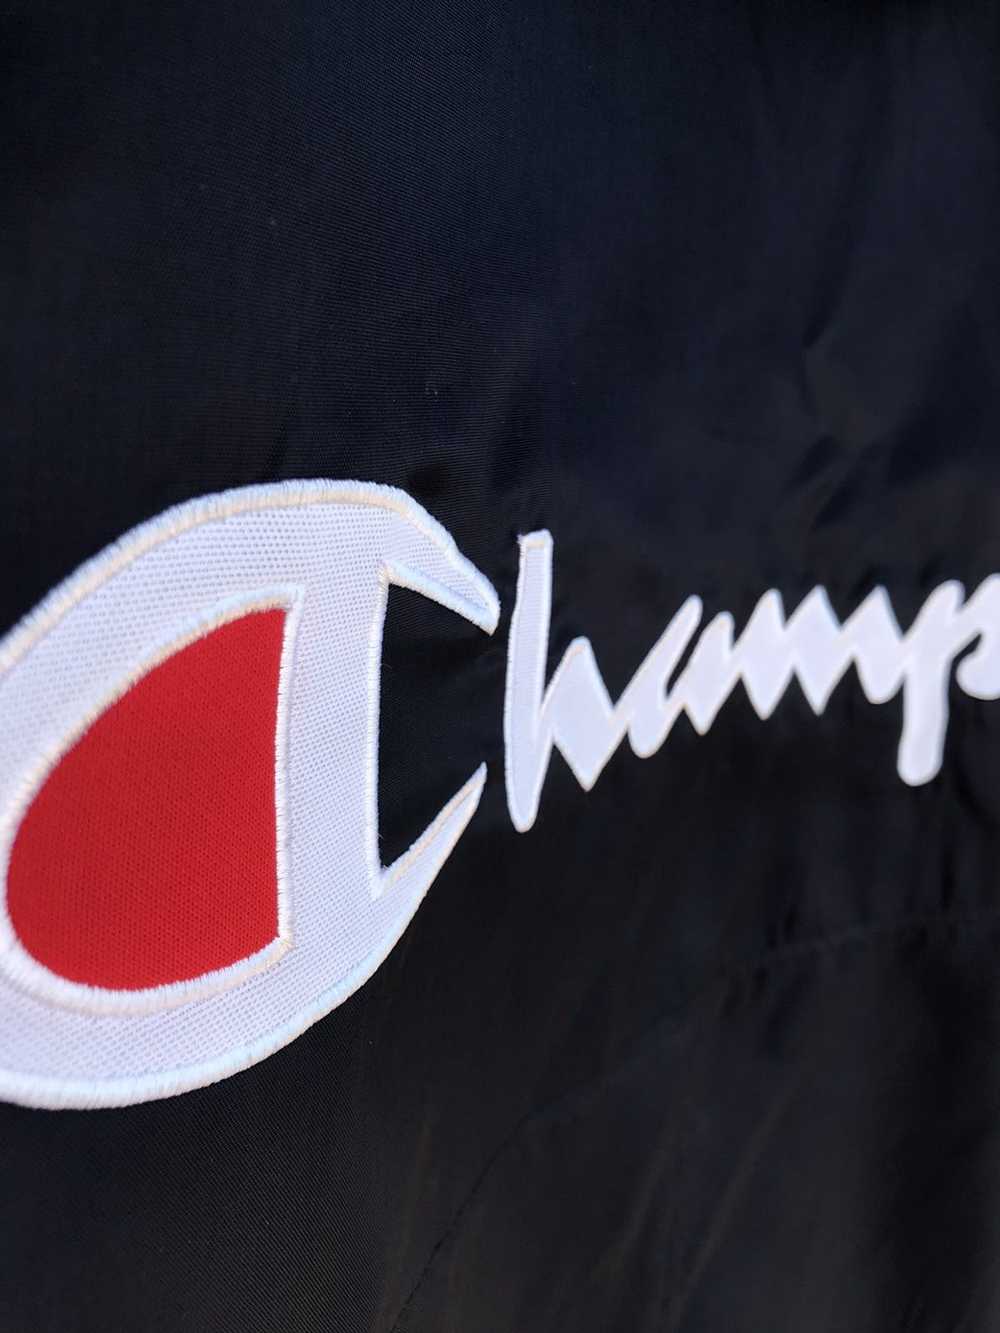 Bomber Jacket × Champion × Vintage Vintage Champi… - image 8